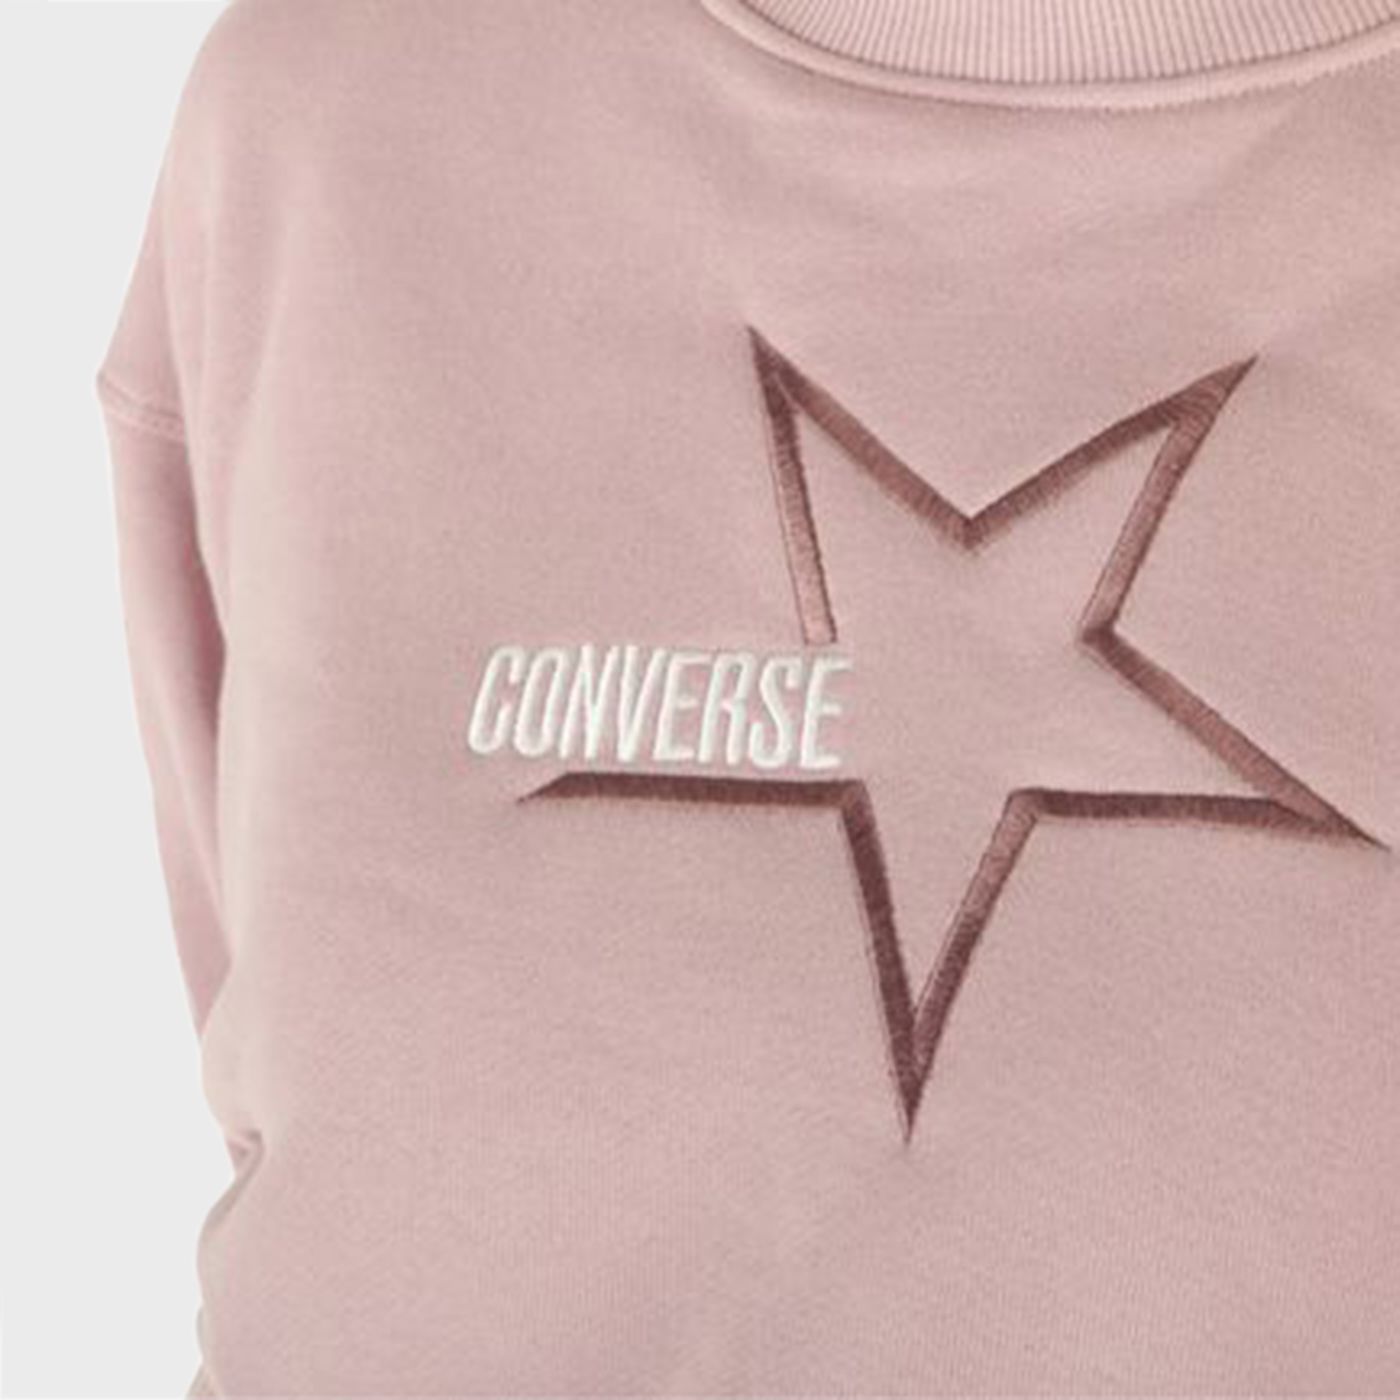 10023328 - Knitwear - Converse